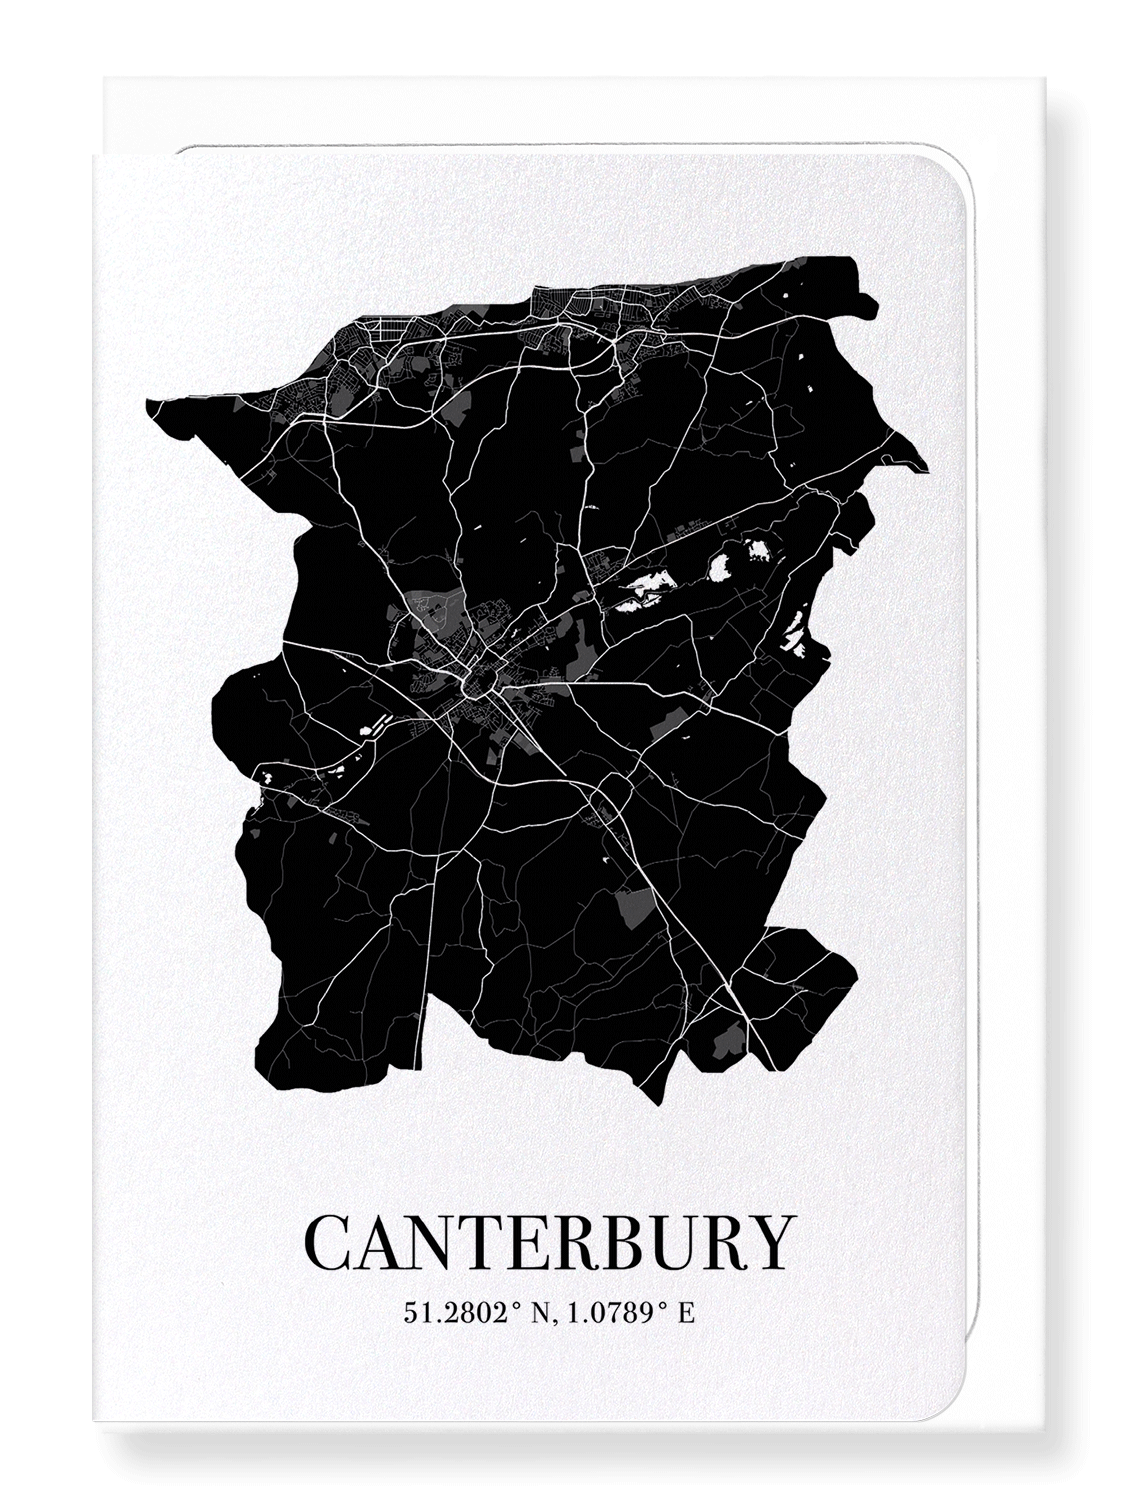 CANTERBURY CUTOUT: Map Cutout Greeting Card